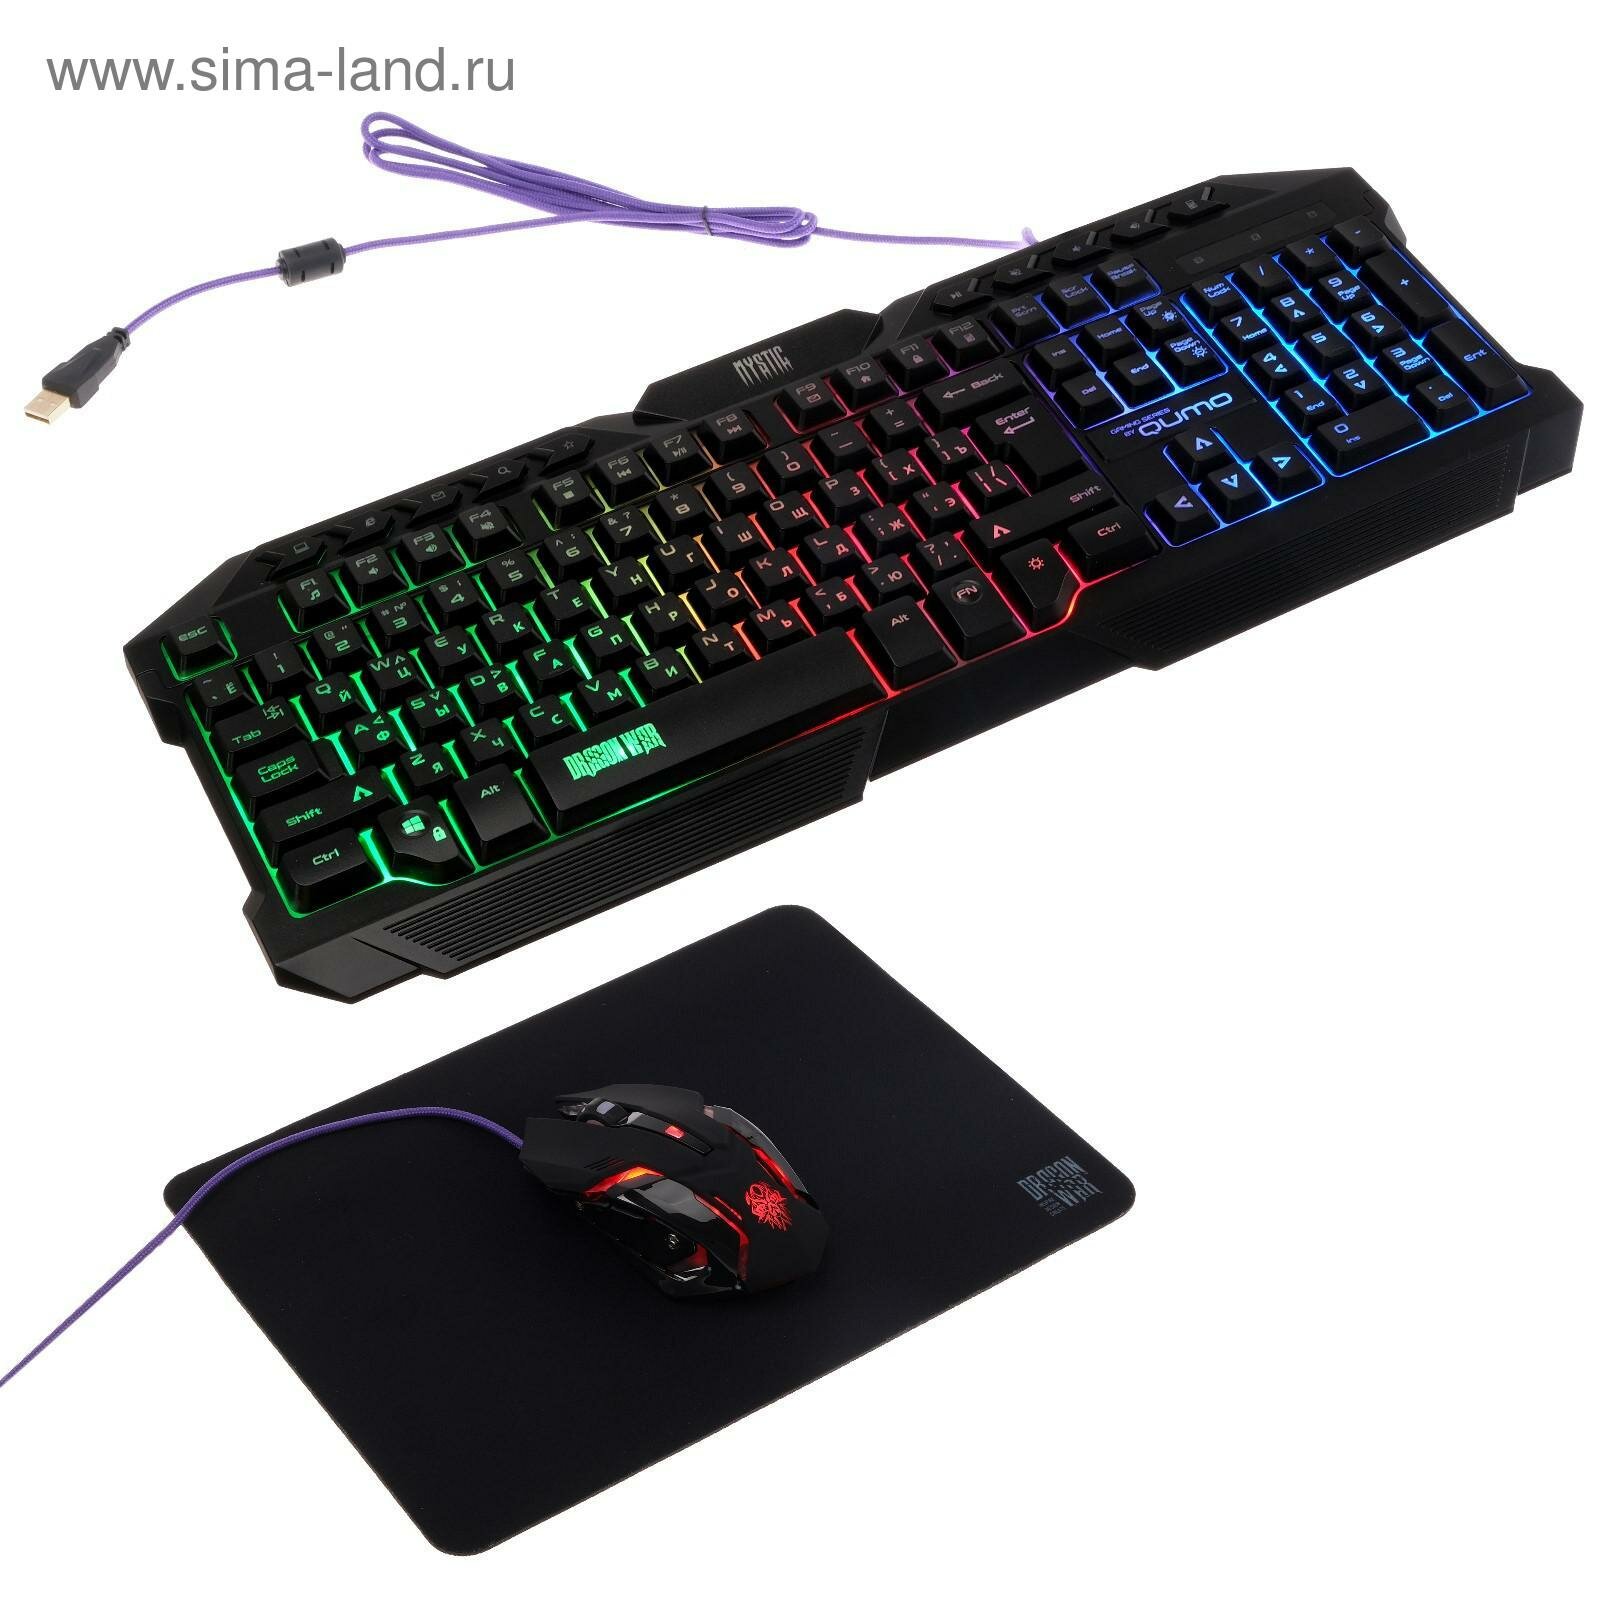 Комплект клавиатура+мышь+ковер Mystic K58/M76, проводная, мембран, 3200 dpi, USB,чёрный